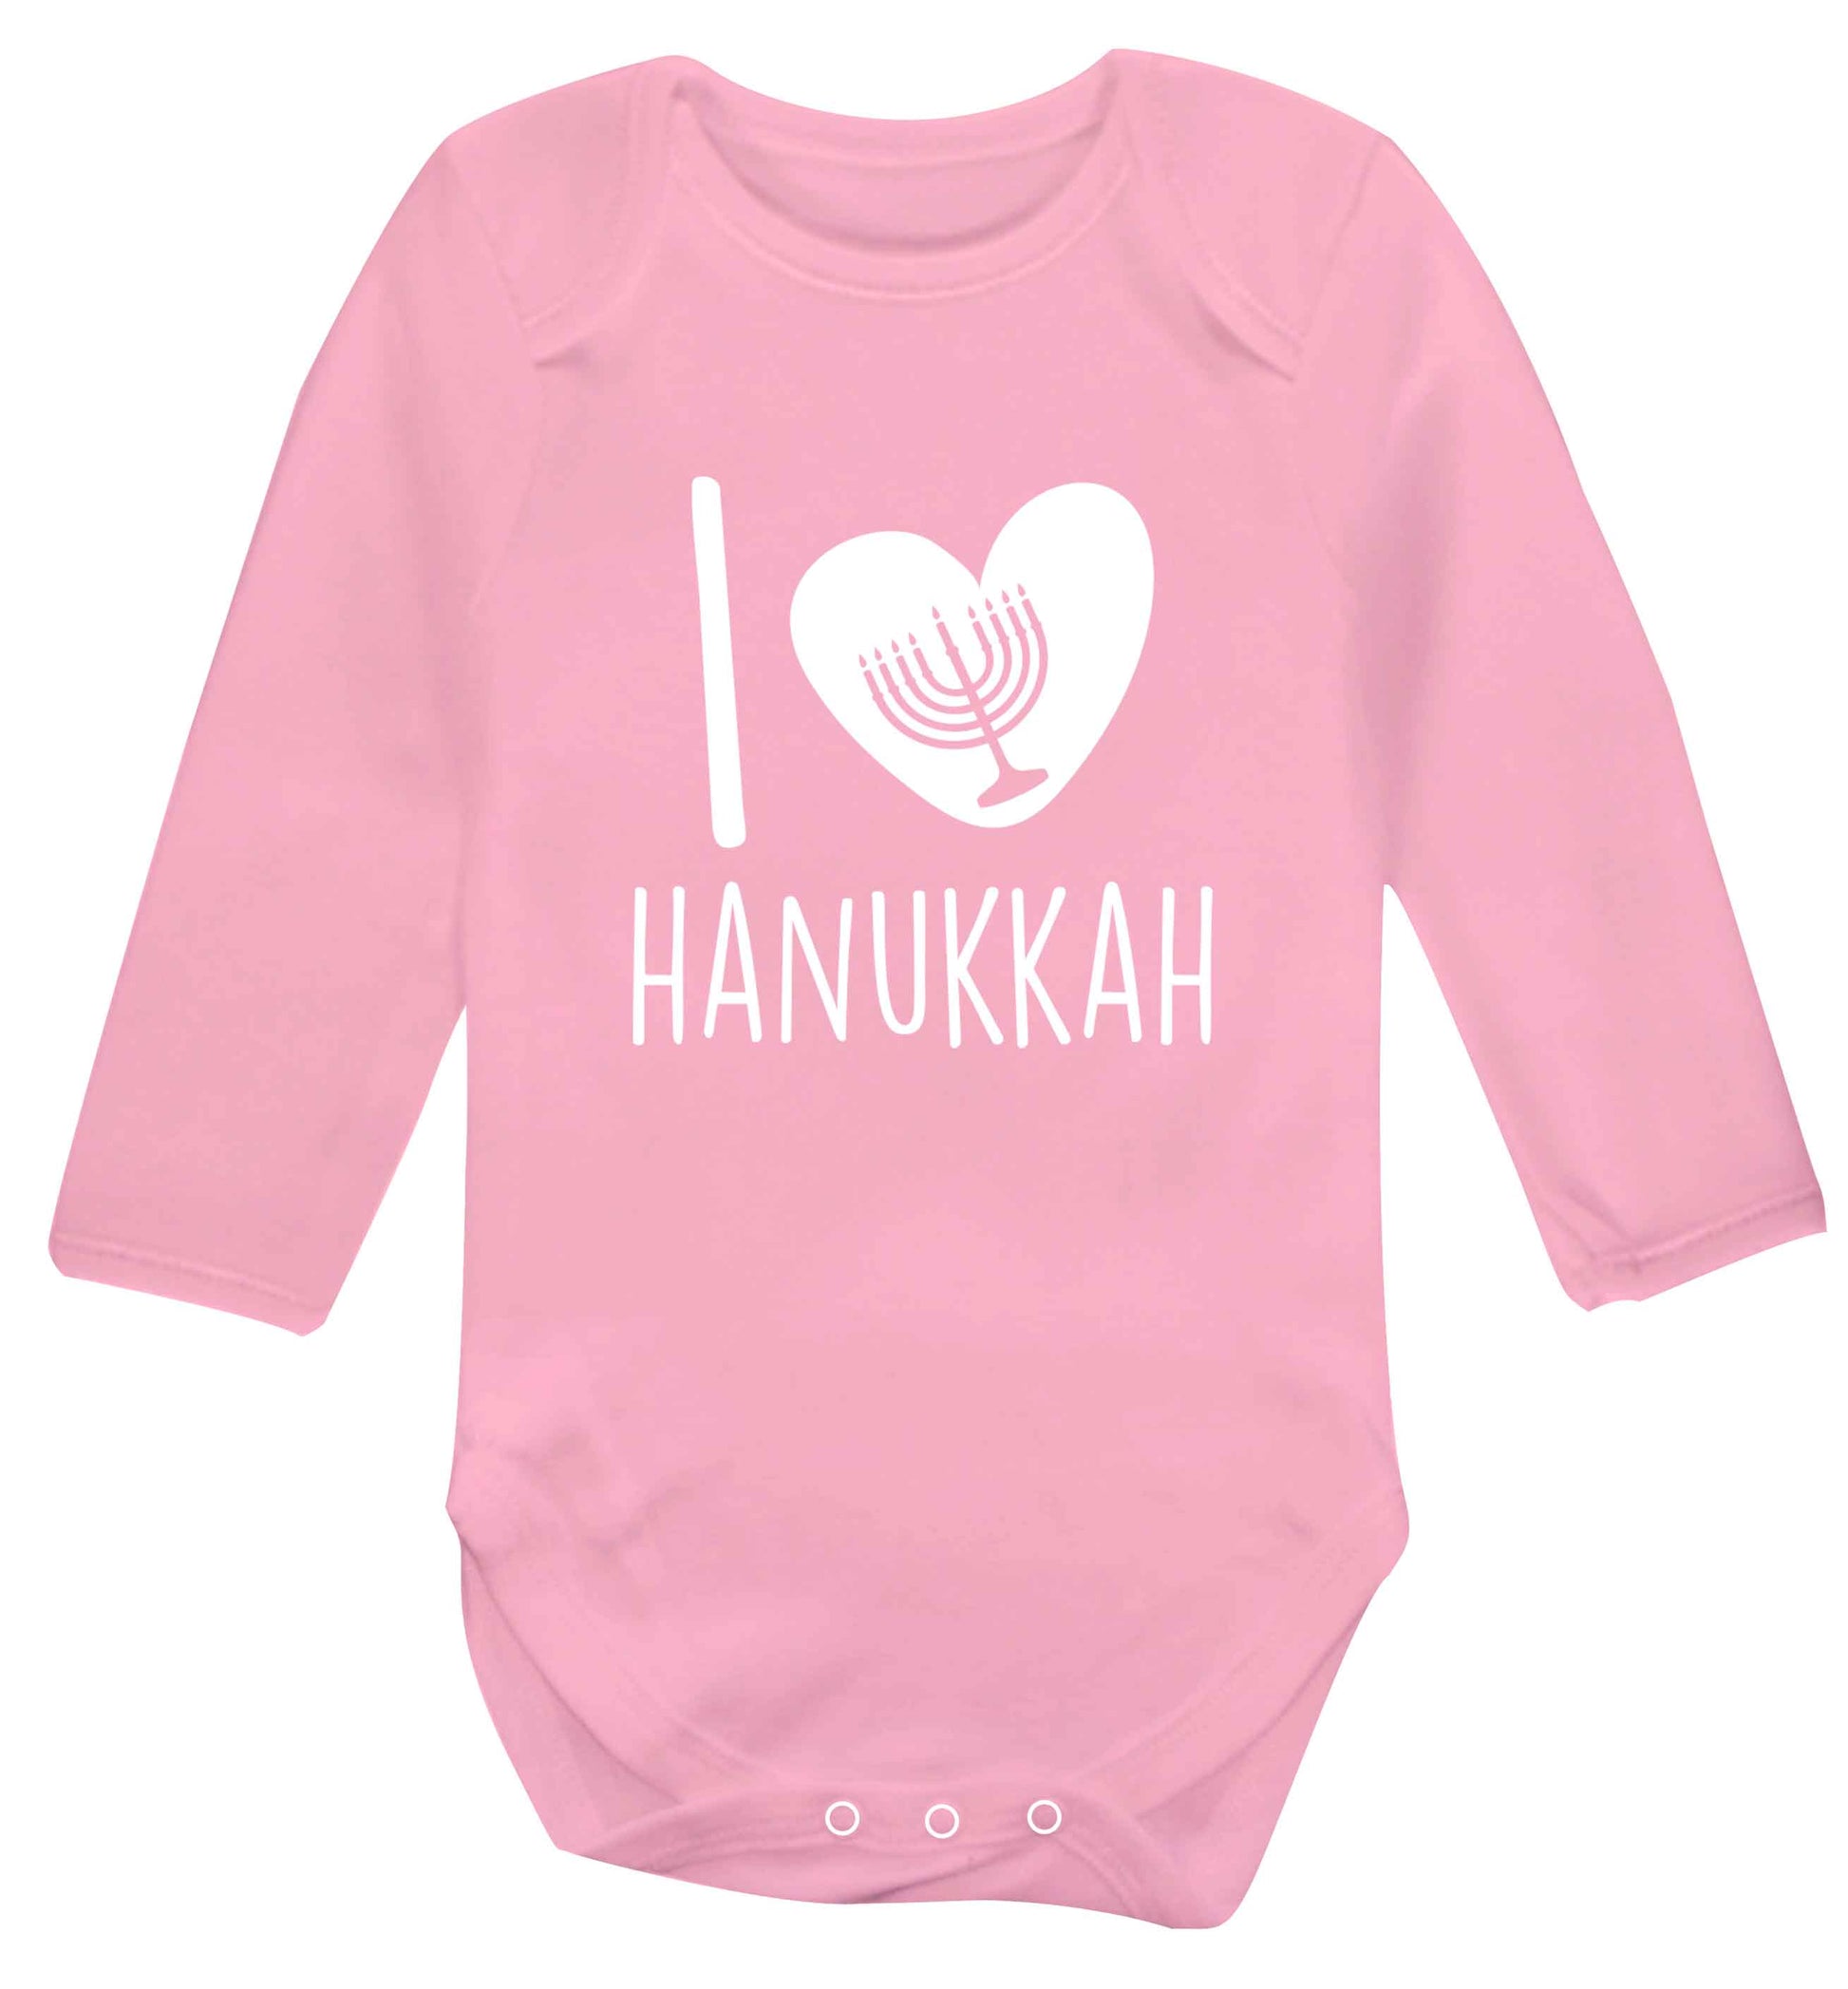 I love hanukkah baby vest long sleeved pale pink 6-12 months